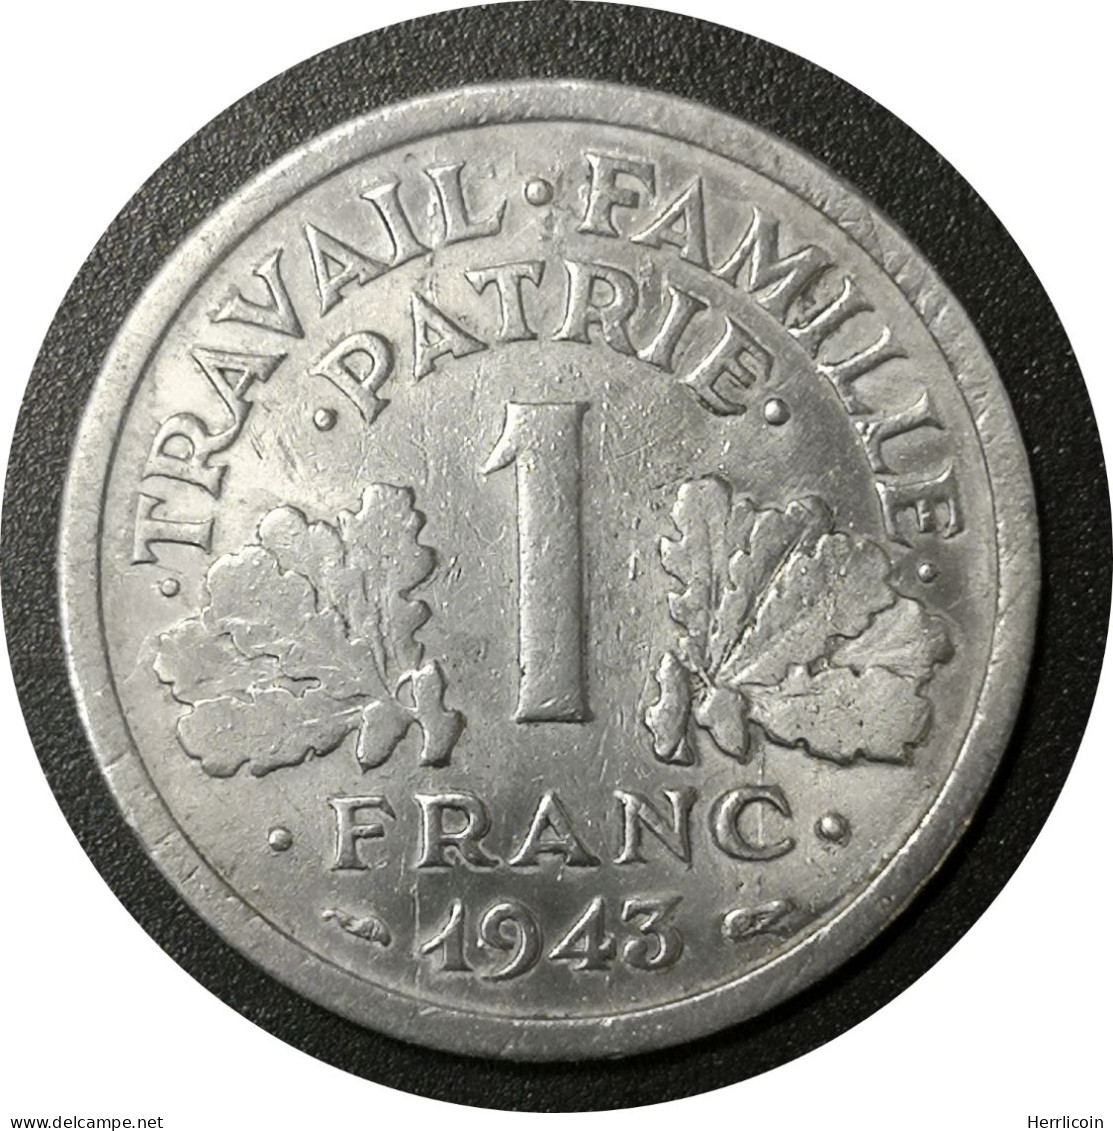 Monnaie France - 1943 - 1 Franc Francisque Aluminium-magnésium, Légère (1,3g) - 1 Franc